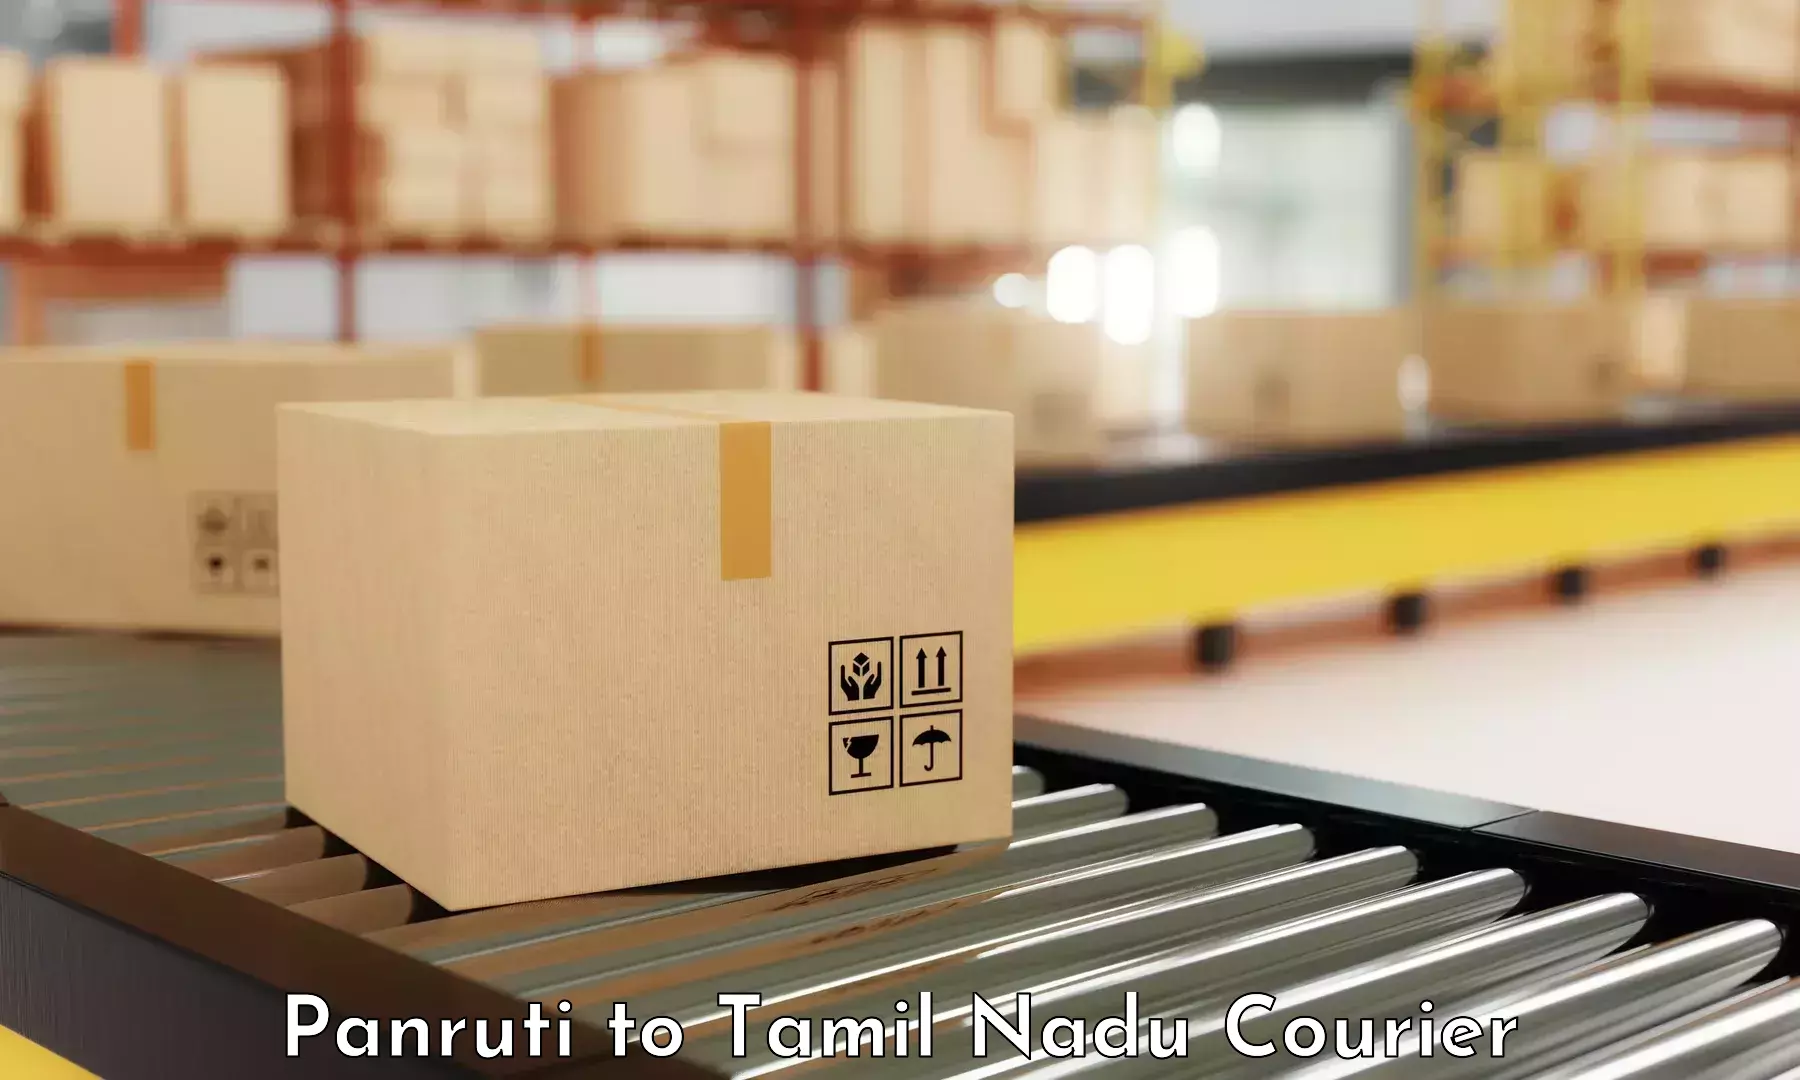 Customer-focused courier Panruti to Ambasamudram